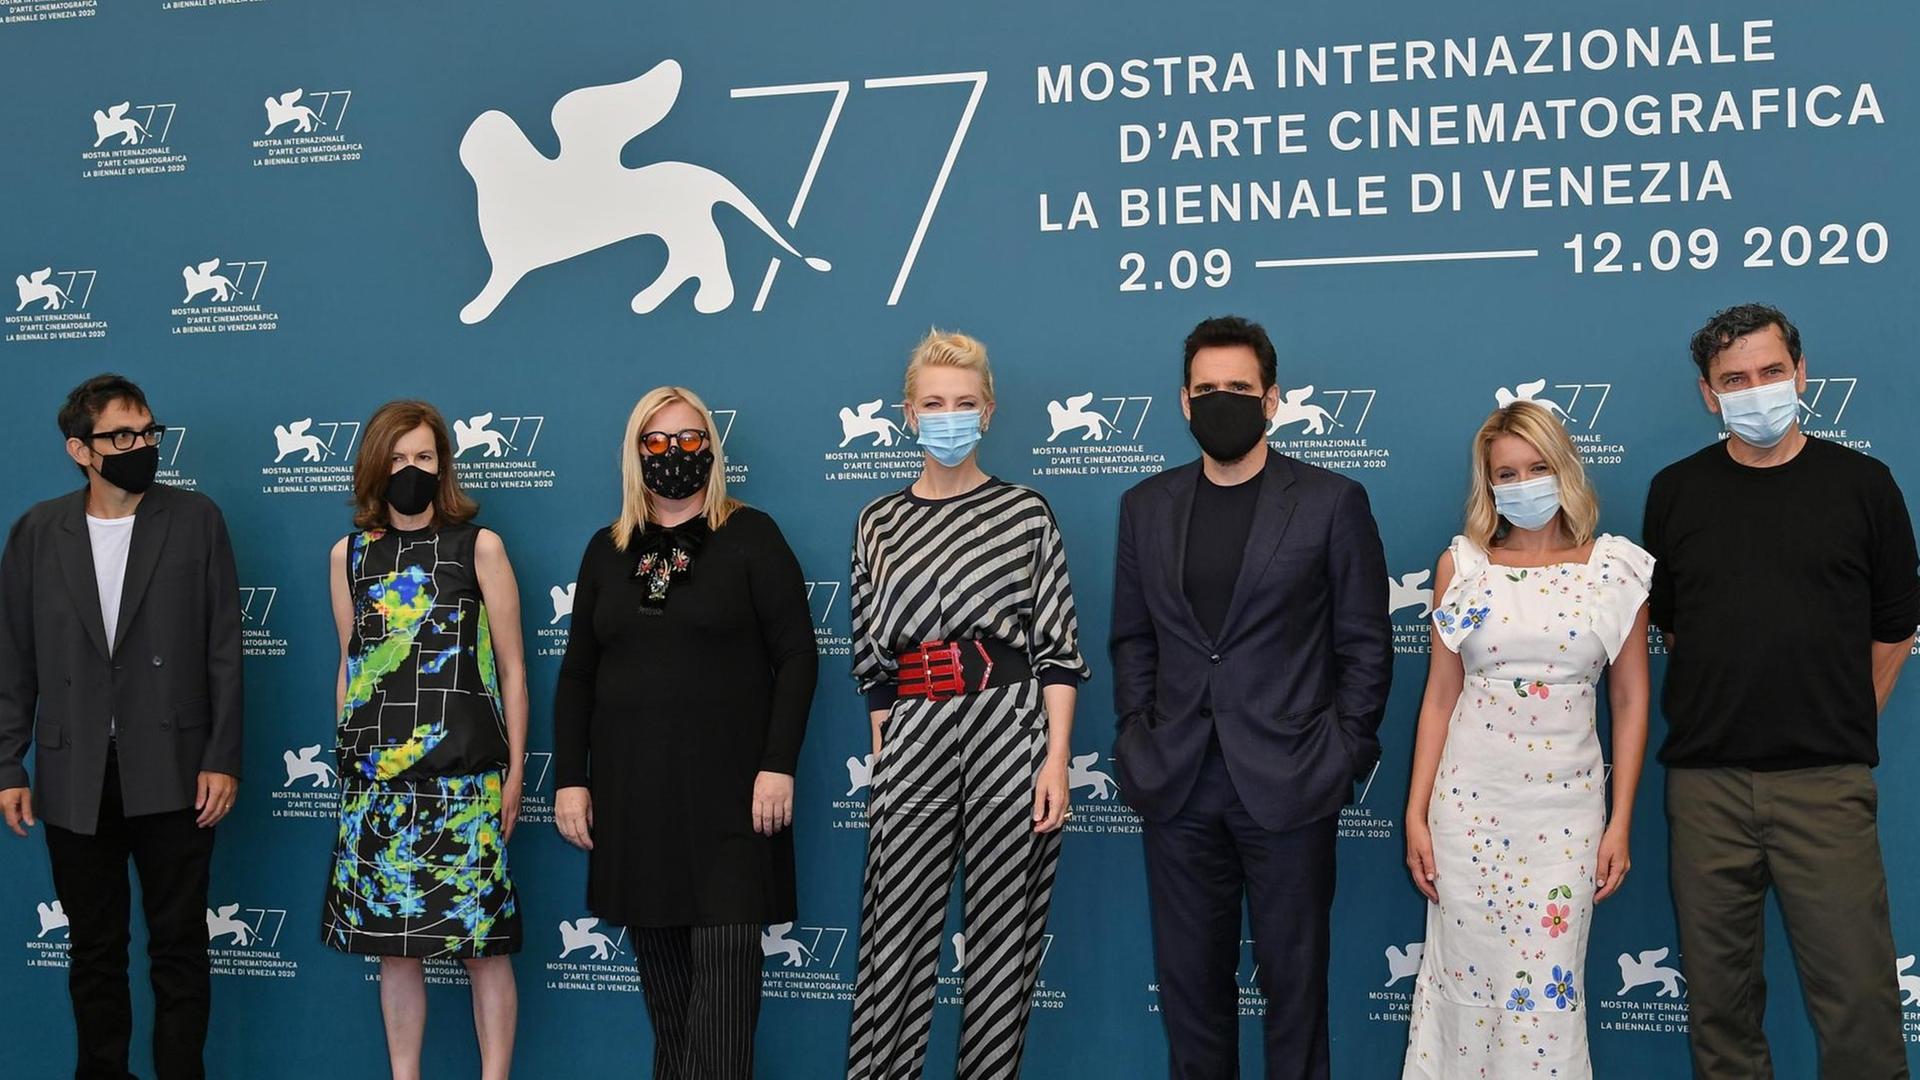 Cate Blanchett, Präsidentin der Jury und ihre MItstreiter Nicola Lagioia, Joanna Hogg, Veronika Franz, Matt Dillon, Ludivine Sagnier, Christian Petzold beim Filmfestival in Venedig.